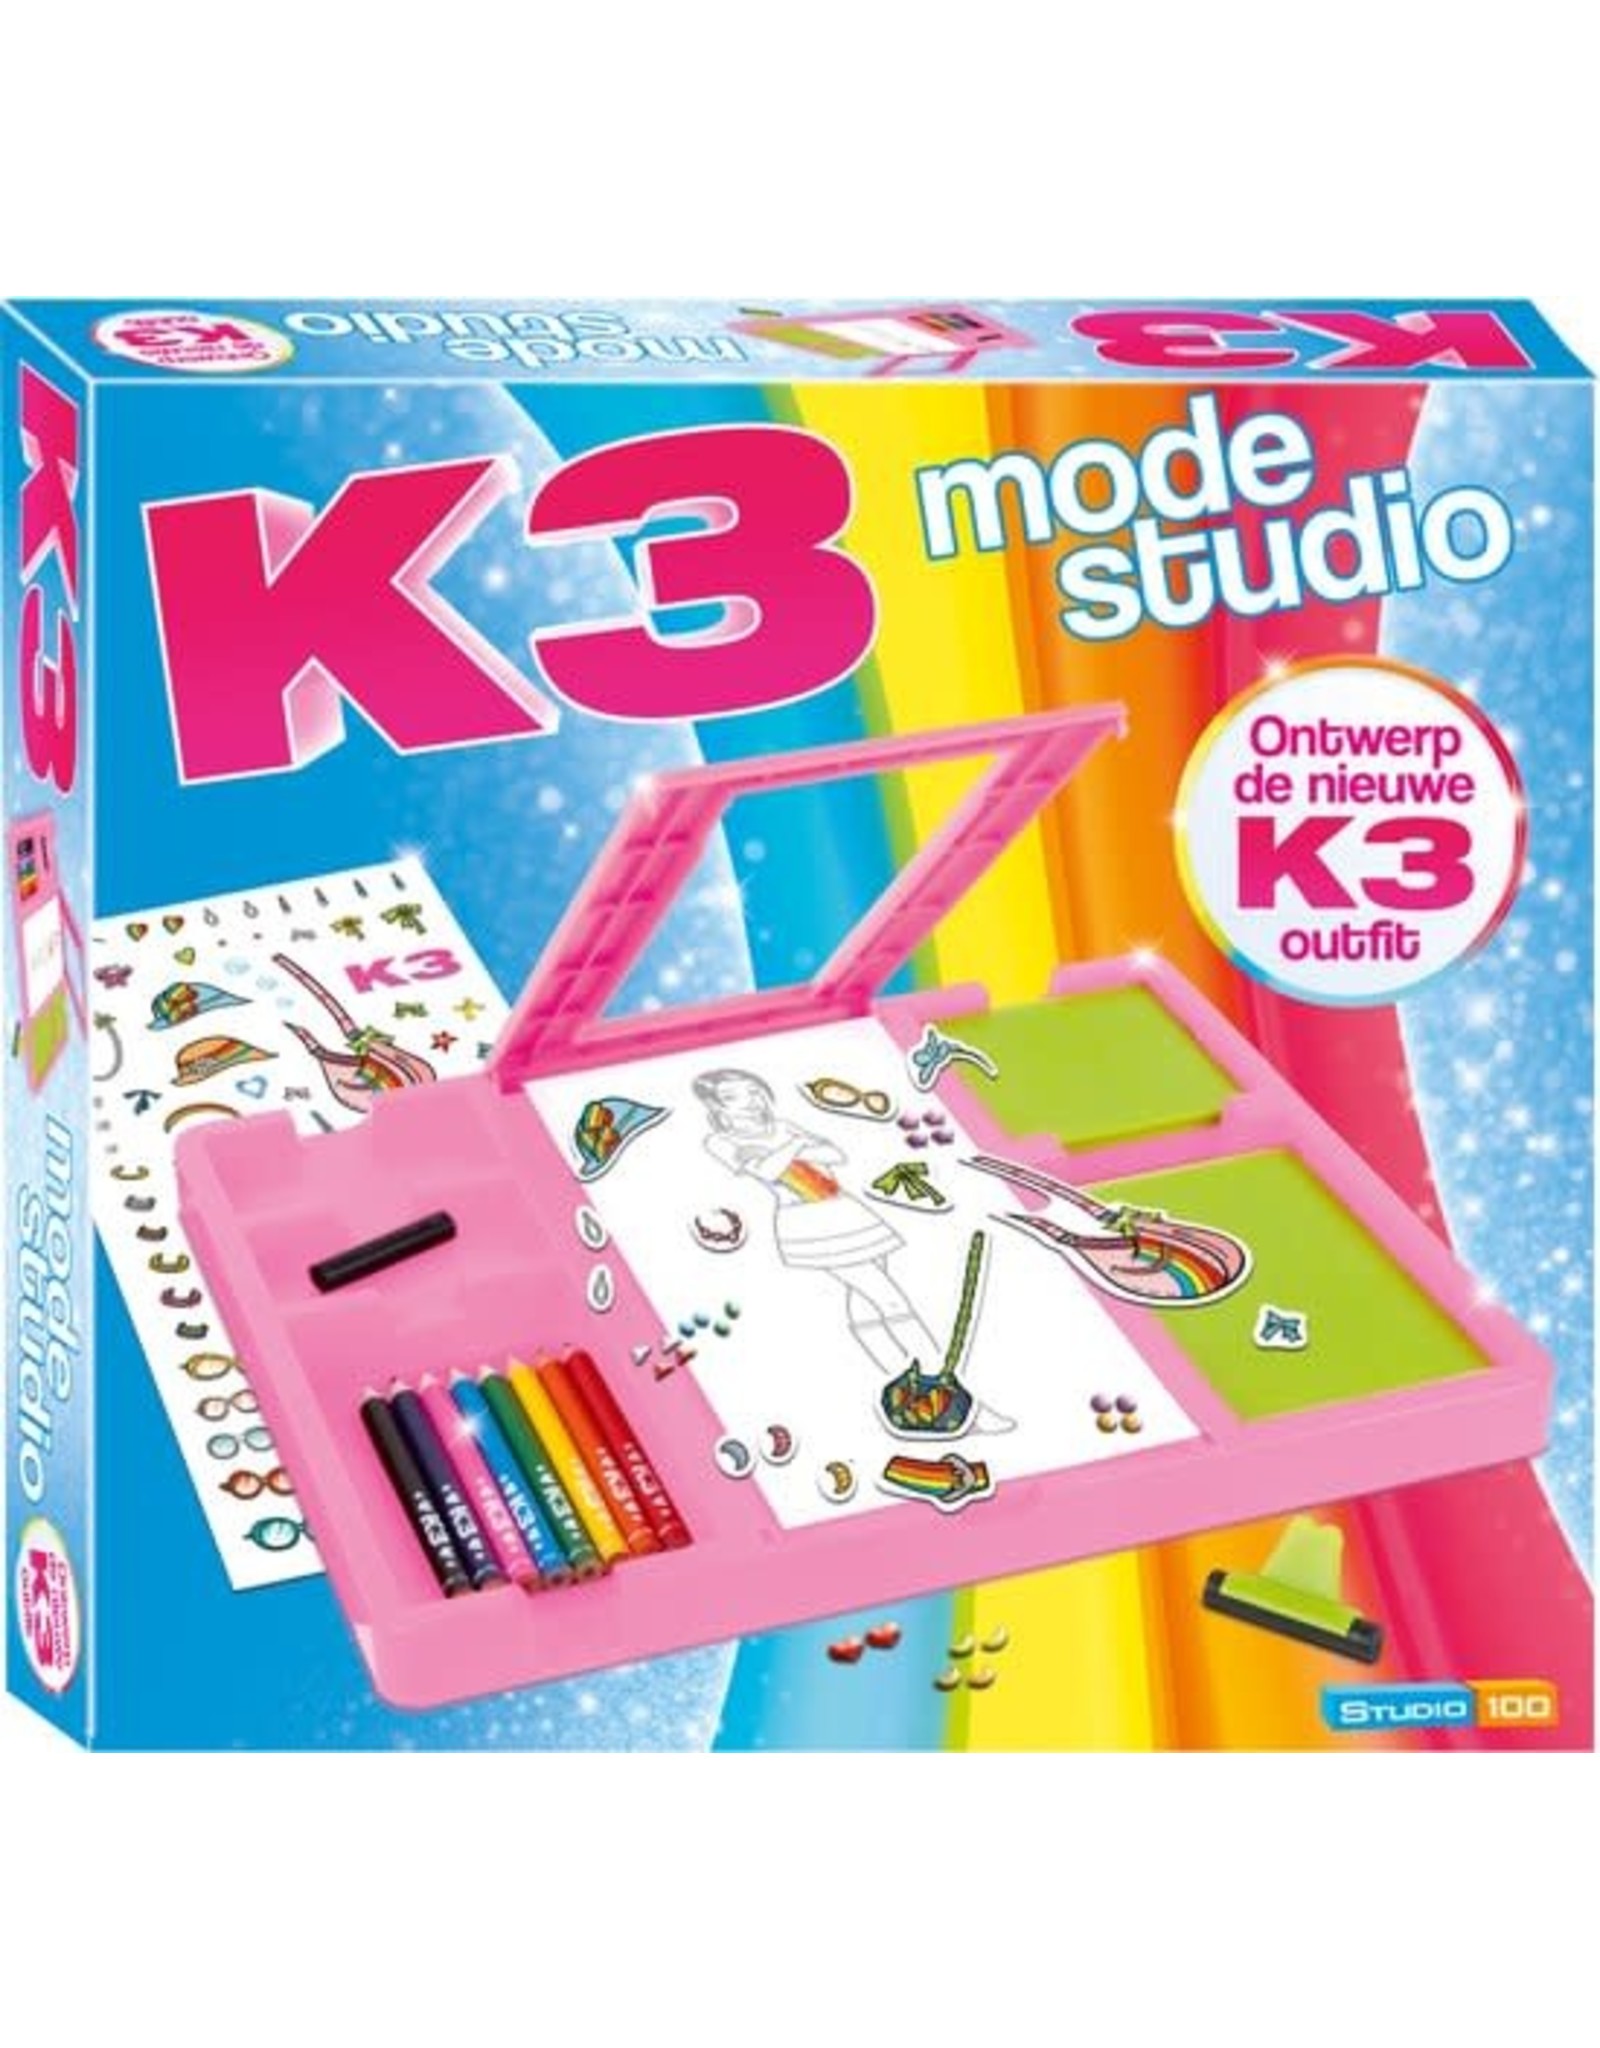 K3 K3 Modestudio